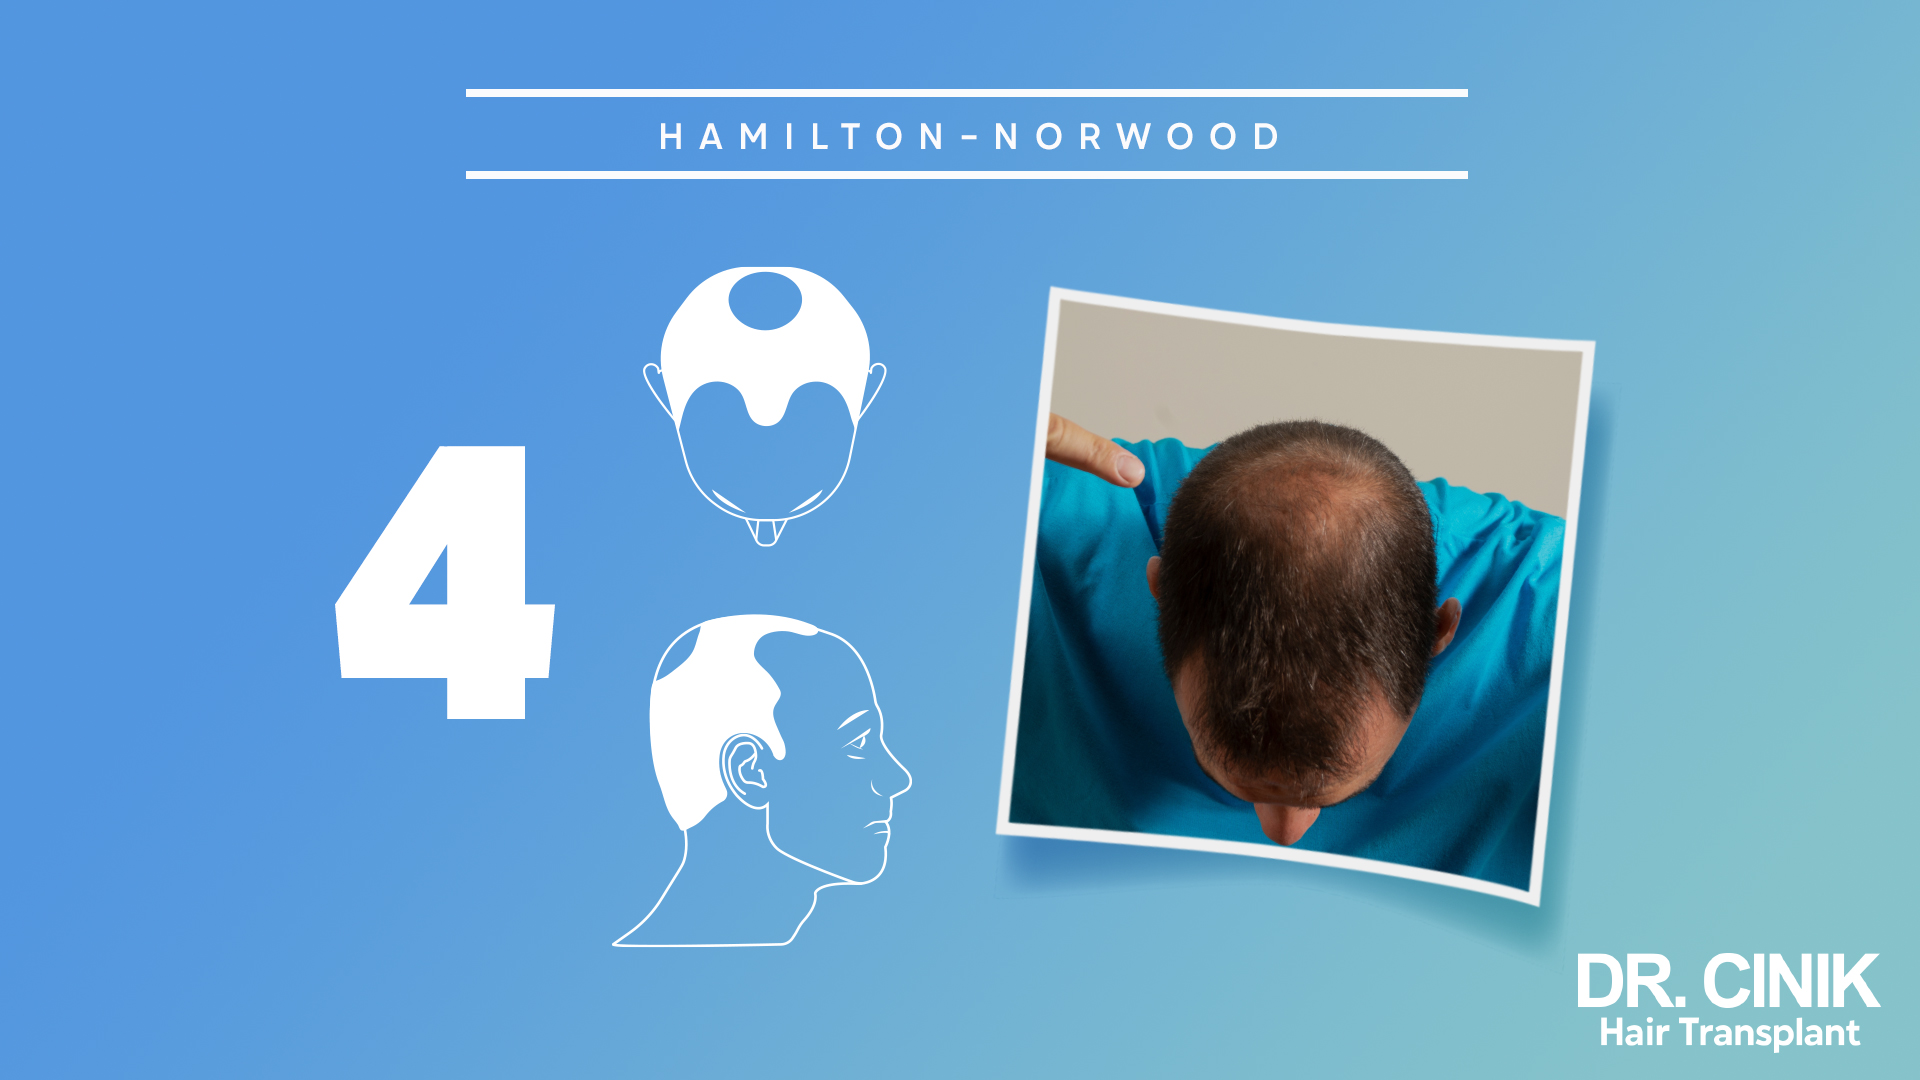 Este gráfico representa la etapa 4 de la escala "HAMILTON-NORWOOD", que se utiliza para categorizar los niveles de pérdida de cabello en hombres.

El fondo es de color azul claro con un número grande "4" en el lado izquierdo, indicando que se trata de la cuarta etapa de la escala. En el centro, hay dos ilustraciones en blanco: la superior muestra una vista frontal de una cabeza con una pérdida de cabello más acentuada en la zona de la coronilla, mientras que la imagen inferior muestra un perfil de un hombre con una recesión notable en la línea del cabello y una zona calva más grande en la parte superior.

A la derecha, hay una fotografía real de la parte superior de la cabeza de una persona, que muestra una pérdida de cabello significativa, con una zona calva más extensa en la parte superior del cuero cabelludo.

En la esquina inferior derecha, aparece el logo "DR. CINIK Hair Transplant".